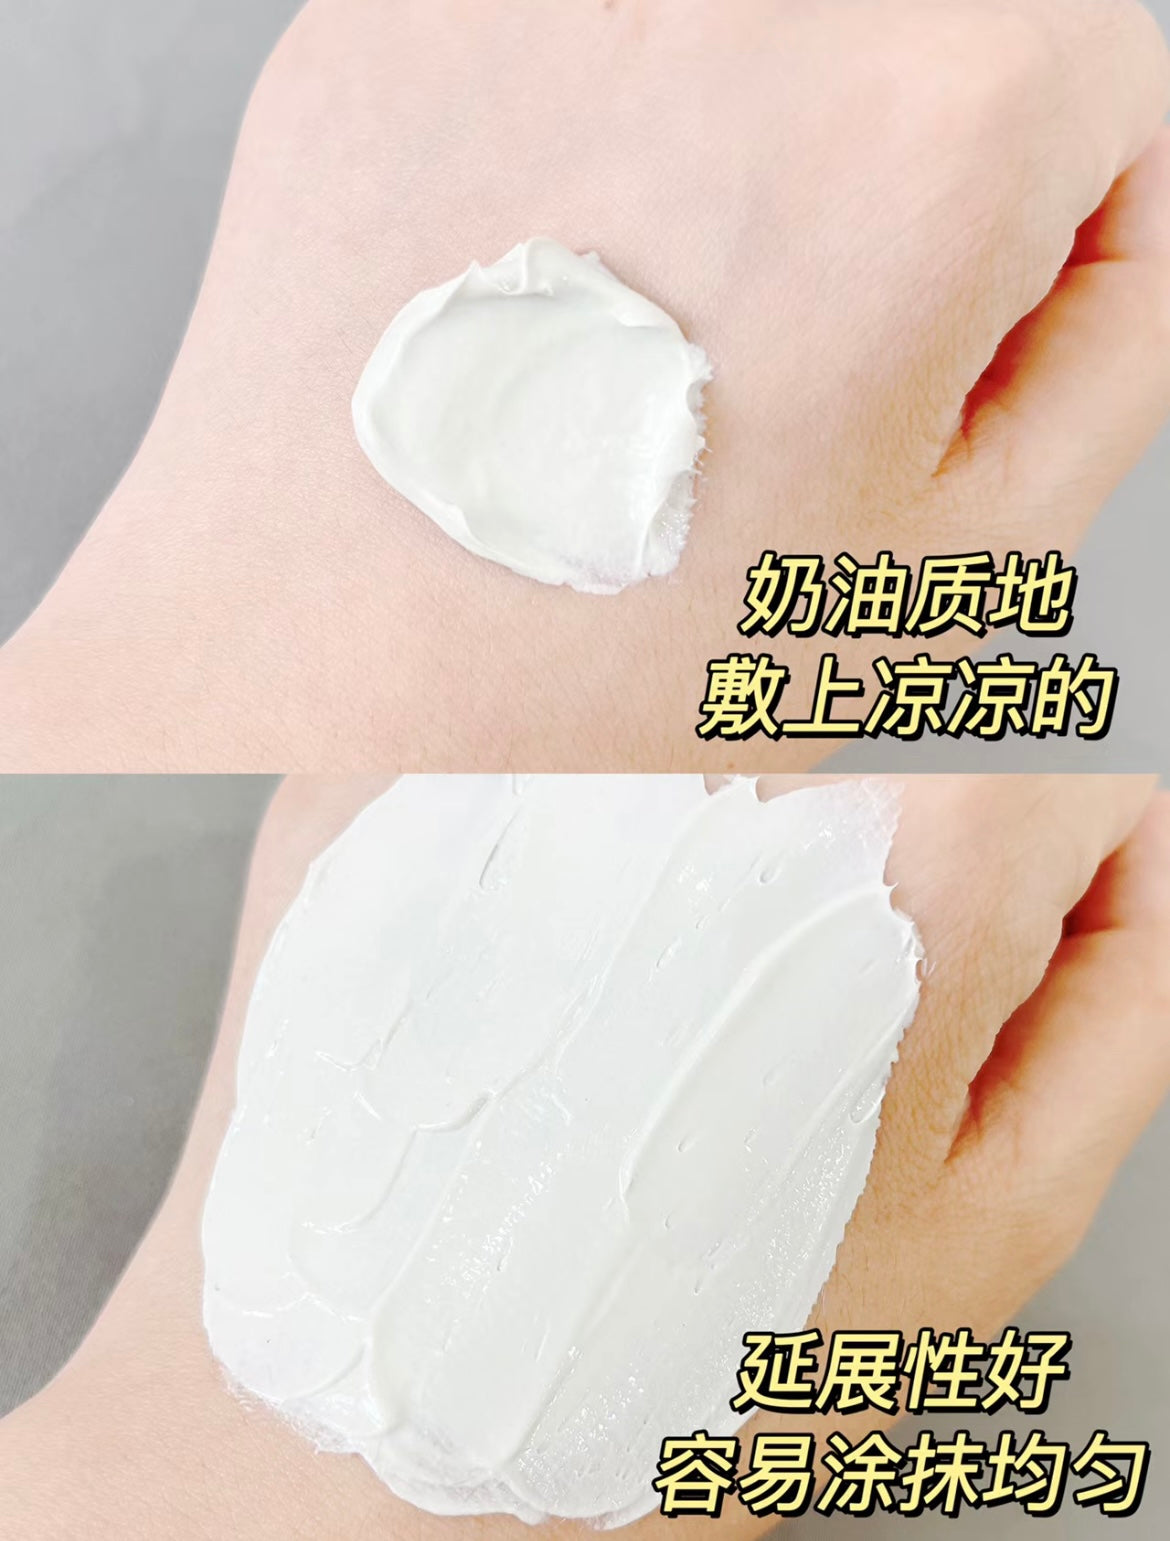 Tiktok/Douyin Hot OSM Pearl White Translucent White Clay Film 50g/100g【Tiktok抖音爆款】欧诗漫珍珠白净透焕白面泥膜